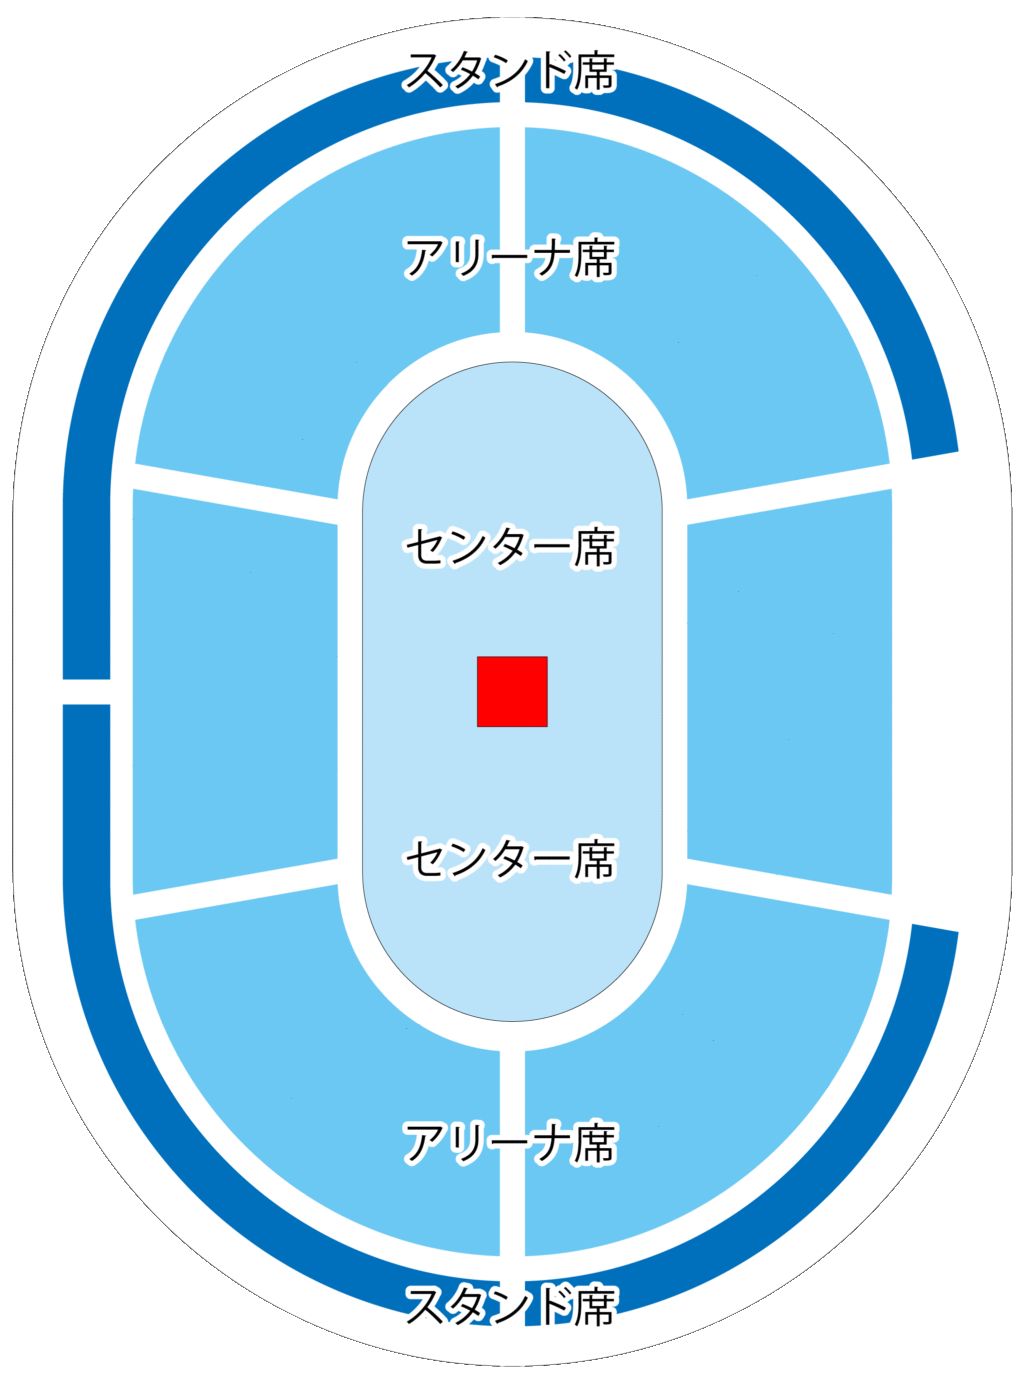 横浜アリーナ座席図